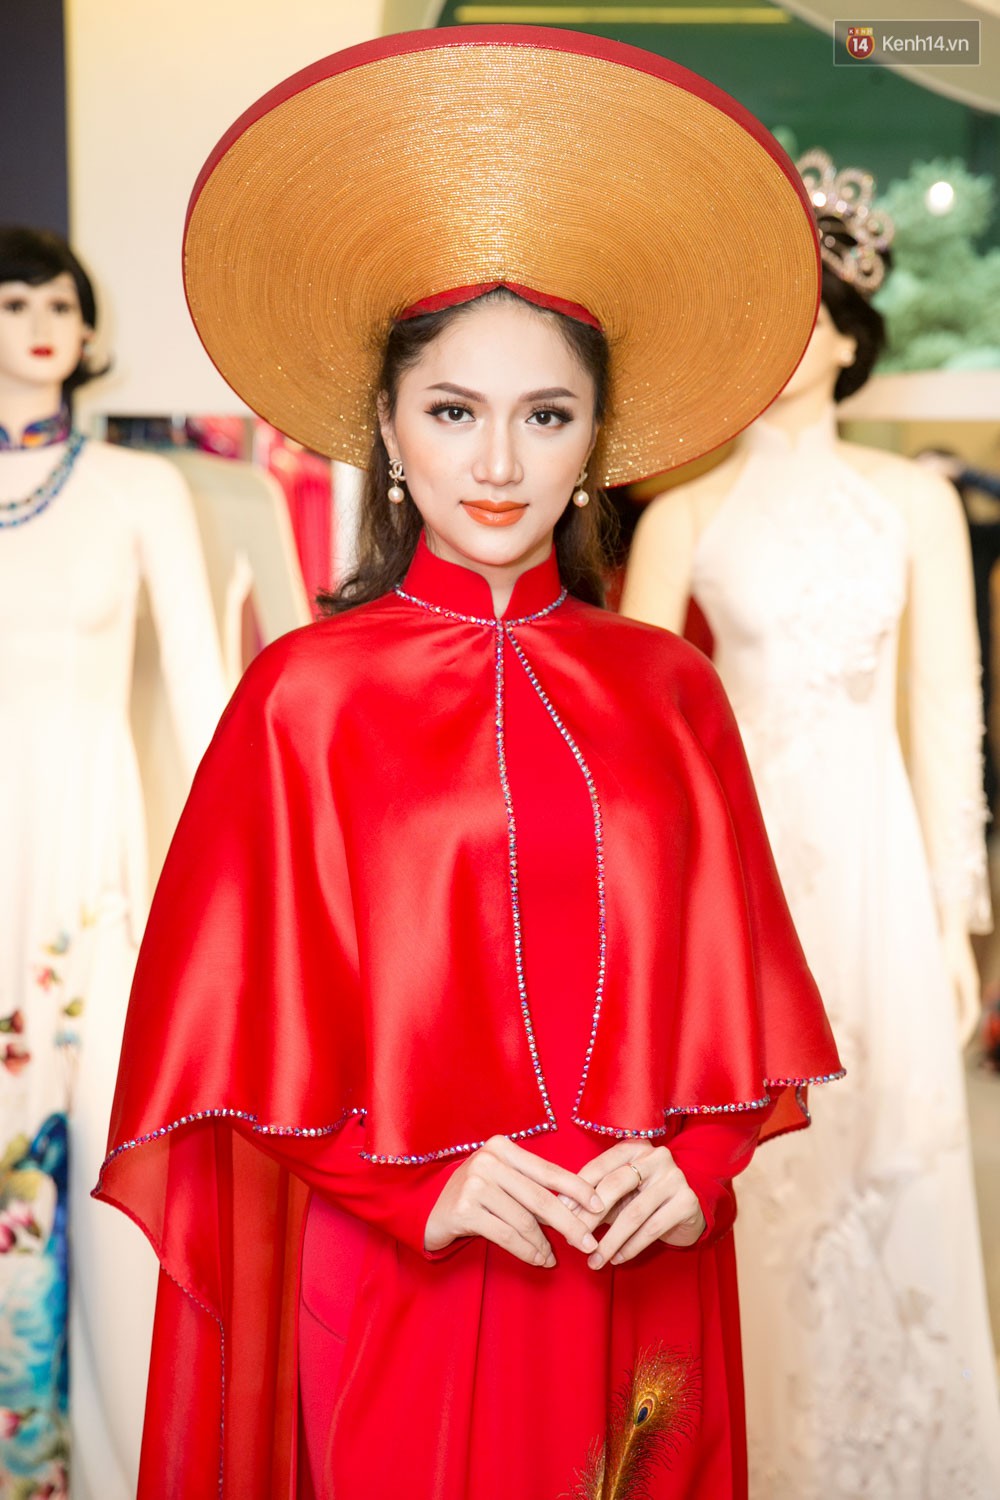 Đàm Vĩnh Hưng trực tiếp đưa Hương Giang đi thử áo dài chuẩn bị cho cuộc thi Hoa hậu Chuyển giới - Ảnh 9.